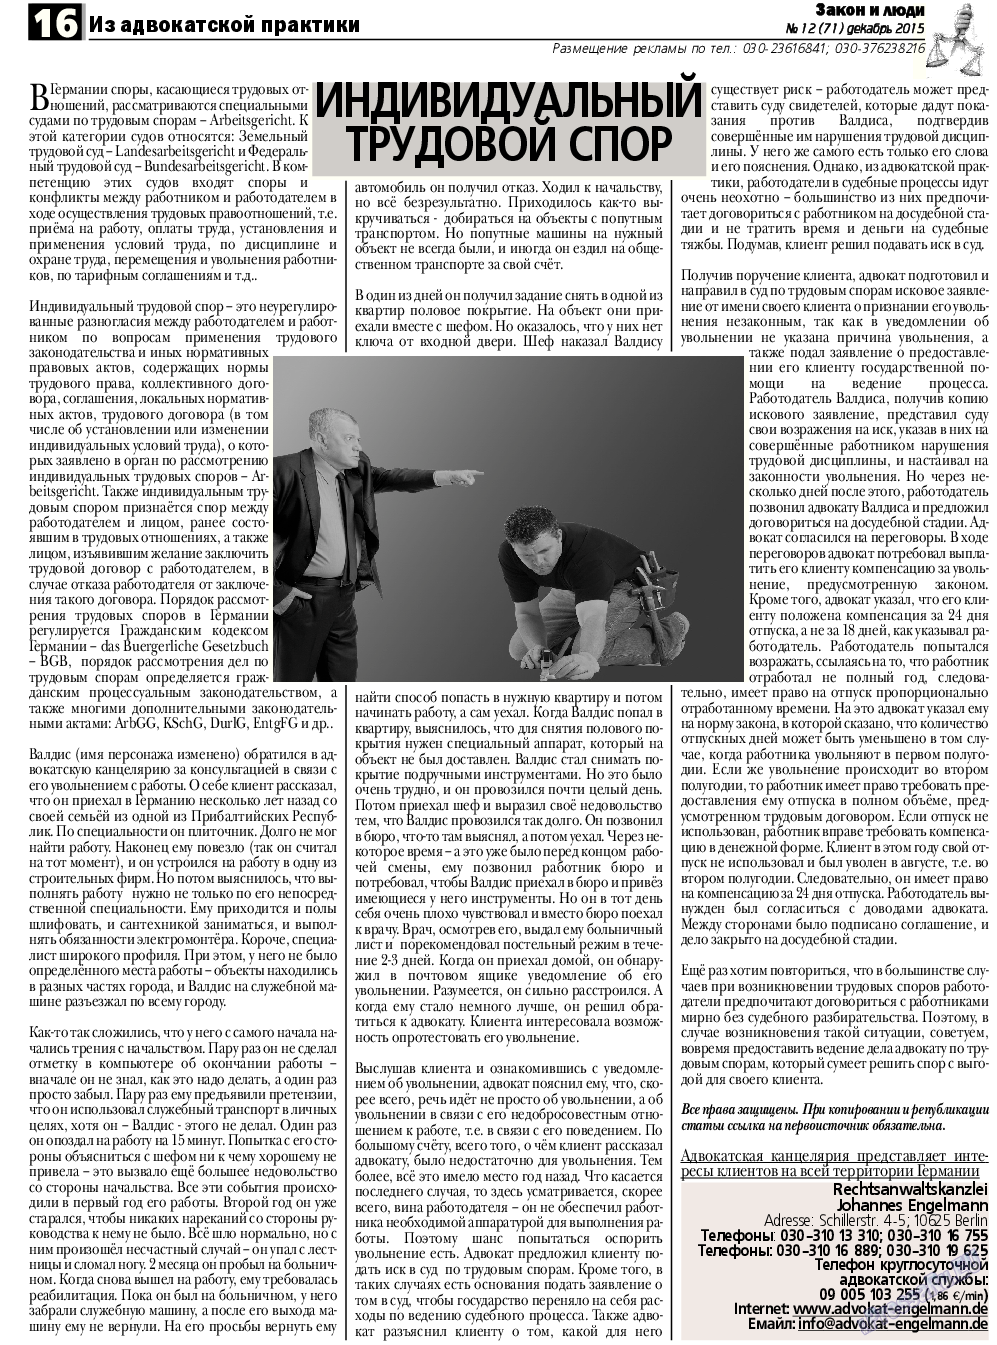 Закон и люди, газета. 2015 №12 стр.16